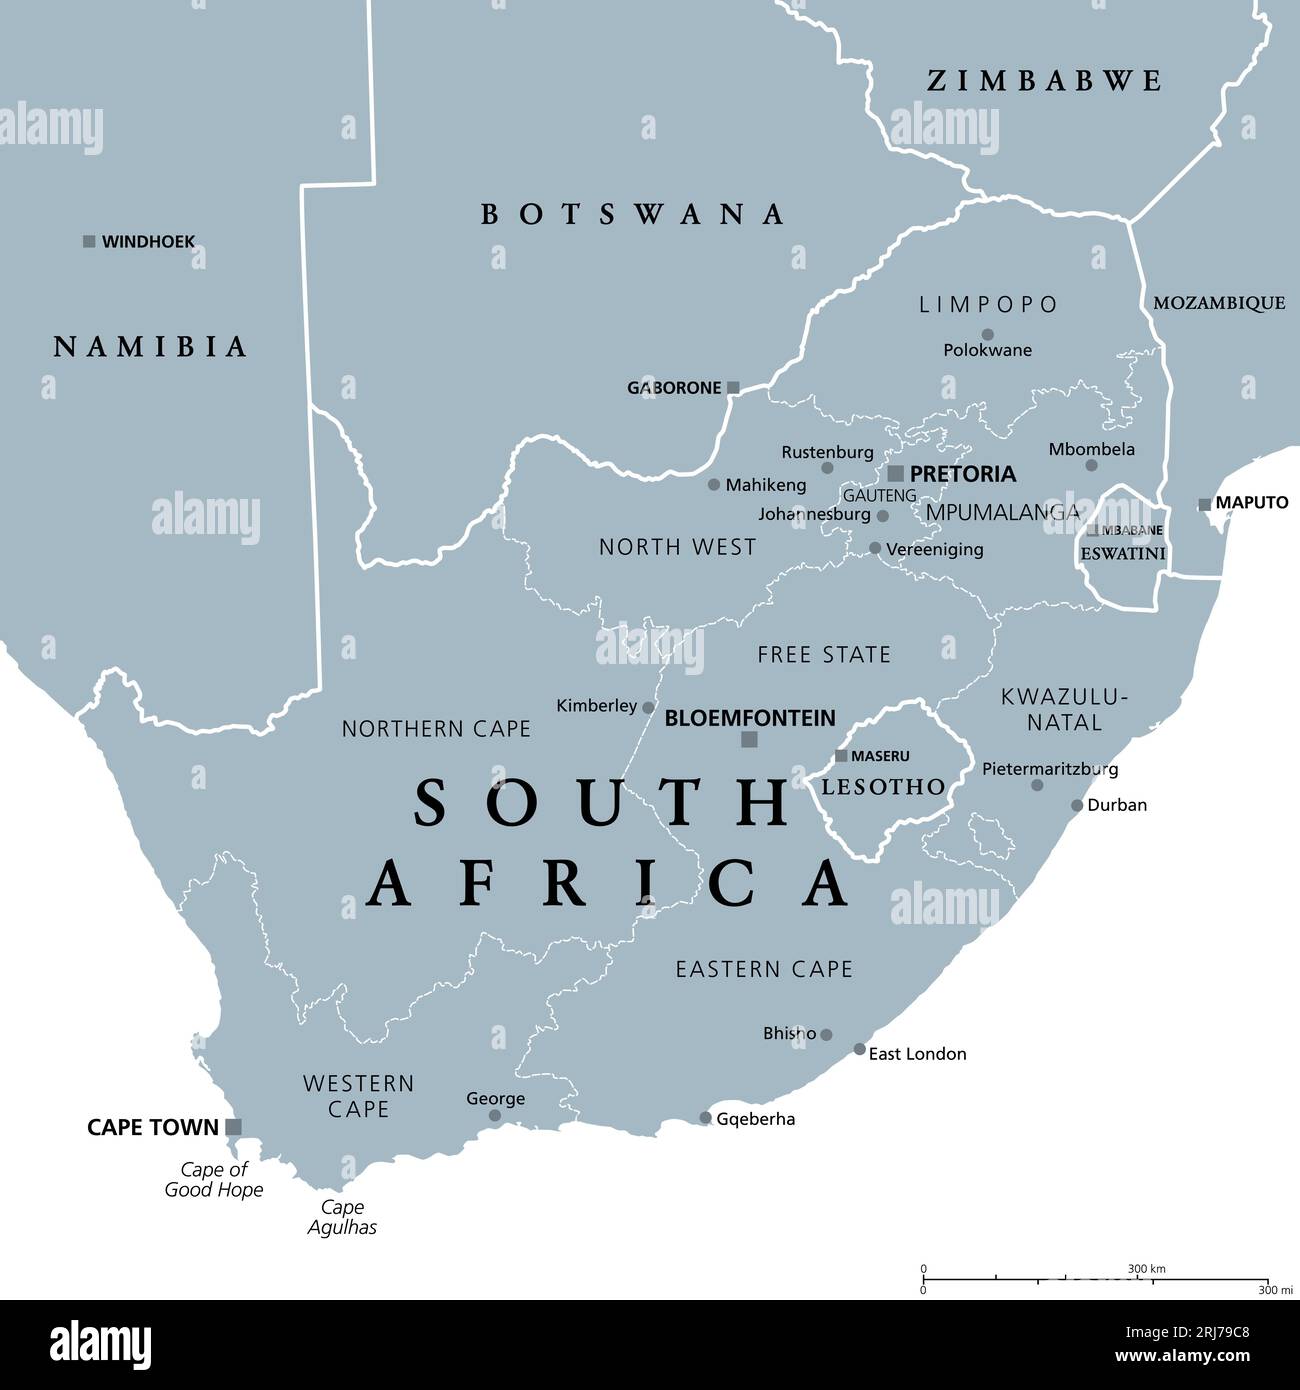 Südafrika, graue politische Landkarte mit neun Provinzen, mit den größten Städten und Grenzen. Republik und südlichstes Land Afrikas. Stockfoto